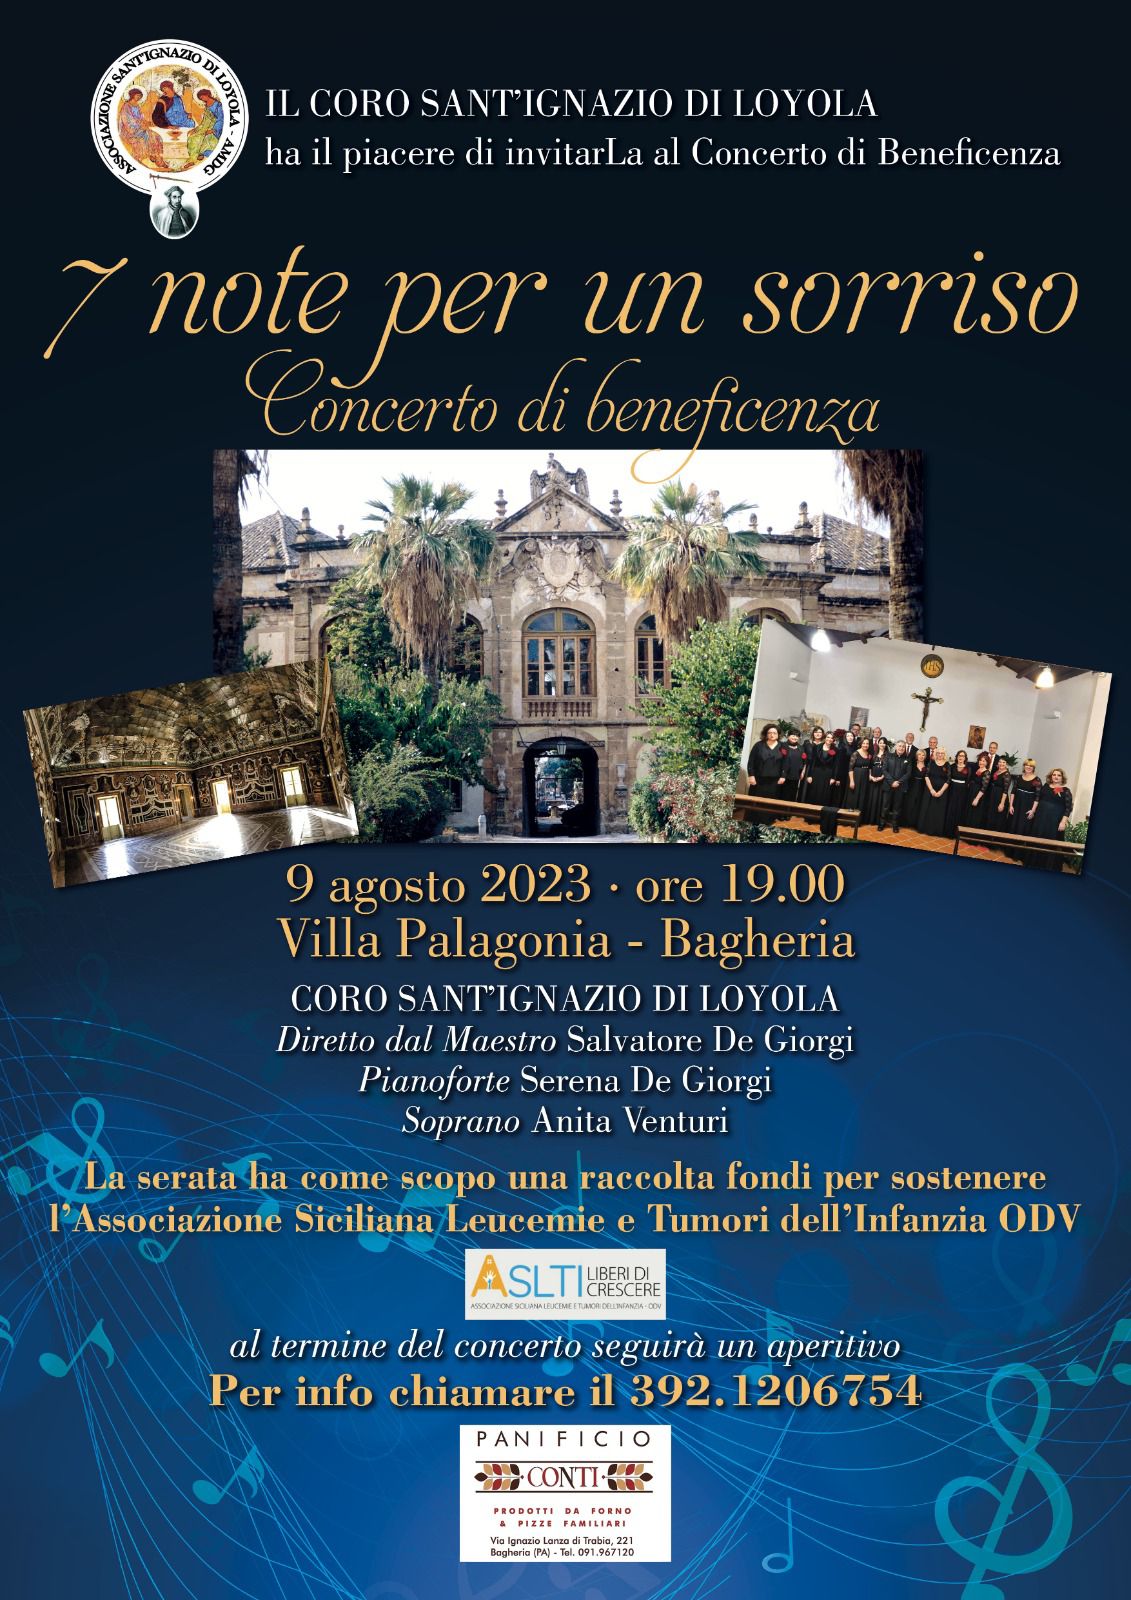  "Sette note per un sorriso": Concerto di beneficenza del coro Sant’Ignazio di Loyola il 9 agosto a villa Palagonia. 